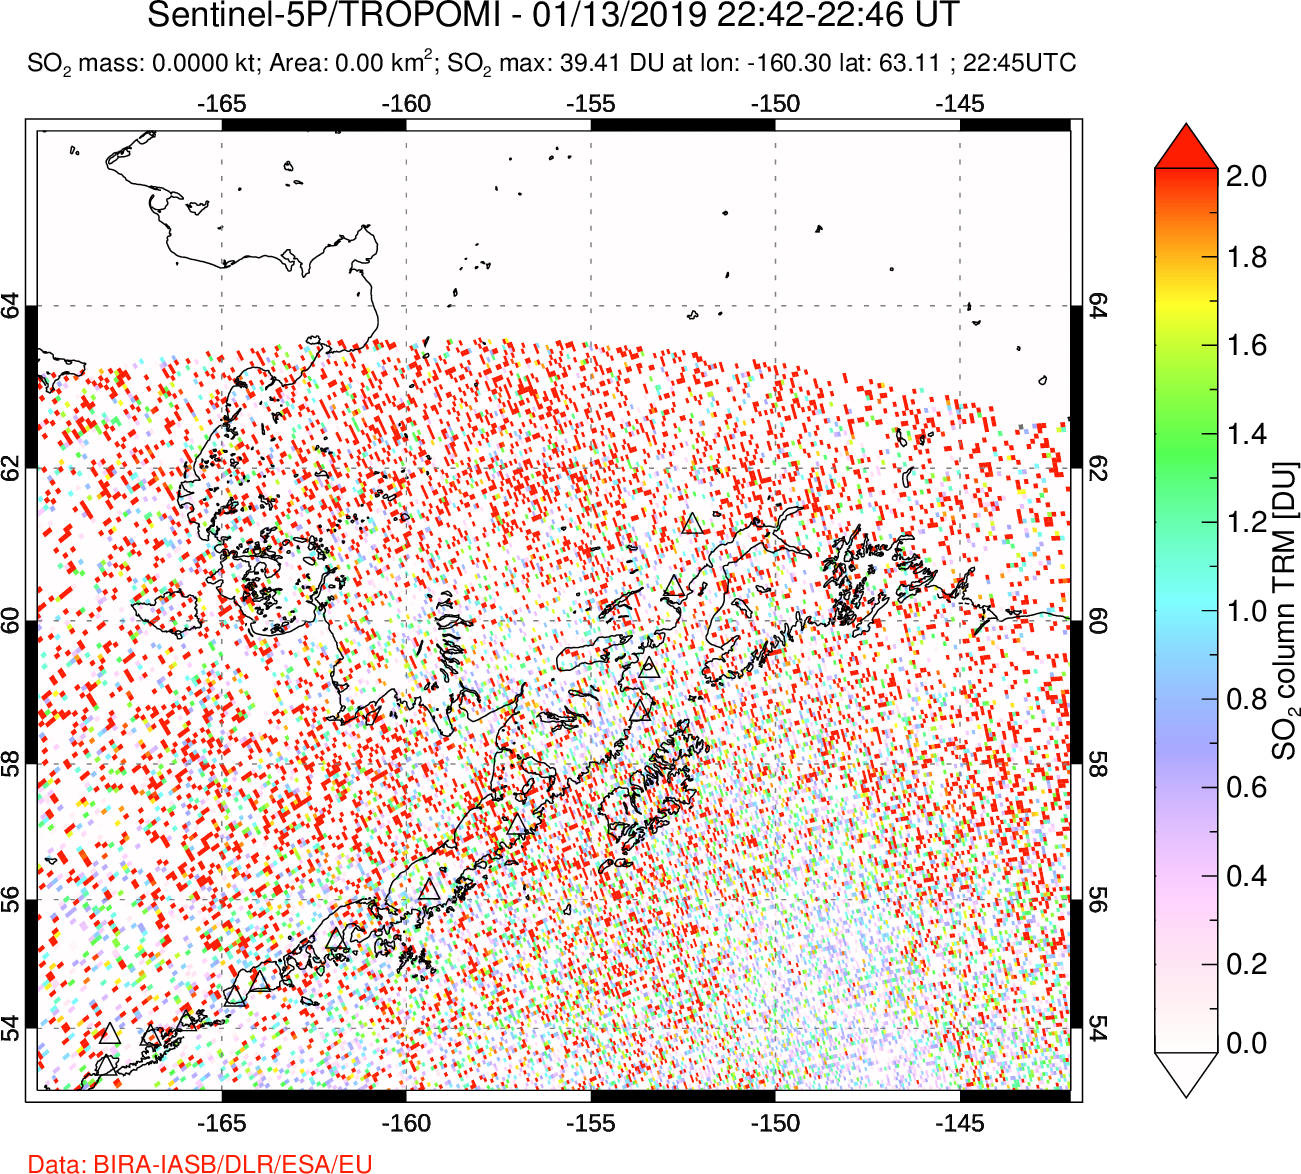 A sulfur dioxide image over Alaska, USA on Jan 13, 2019.